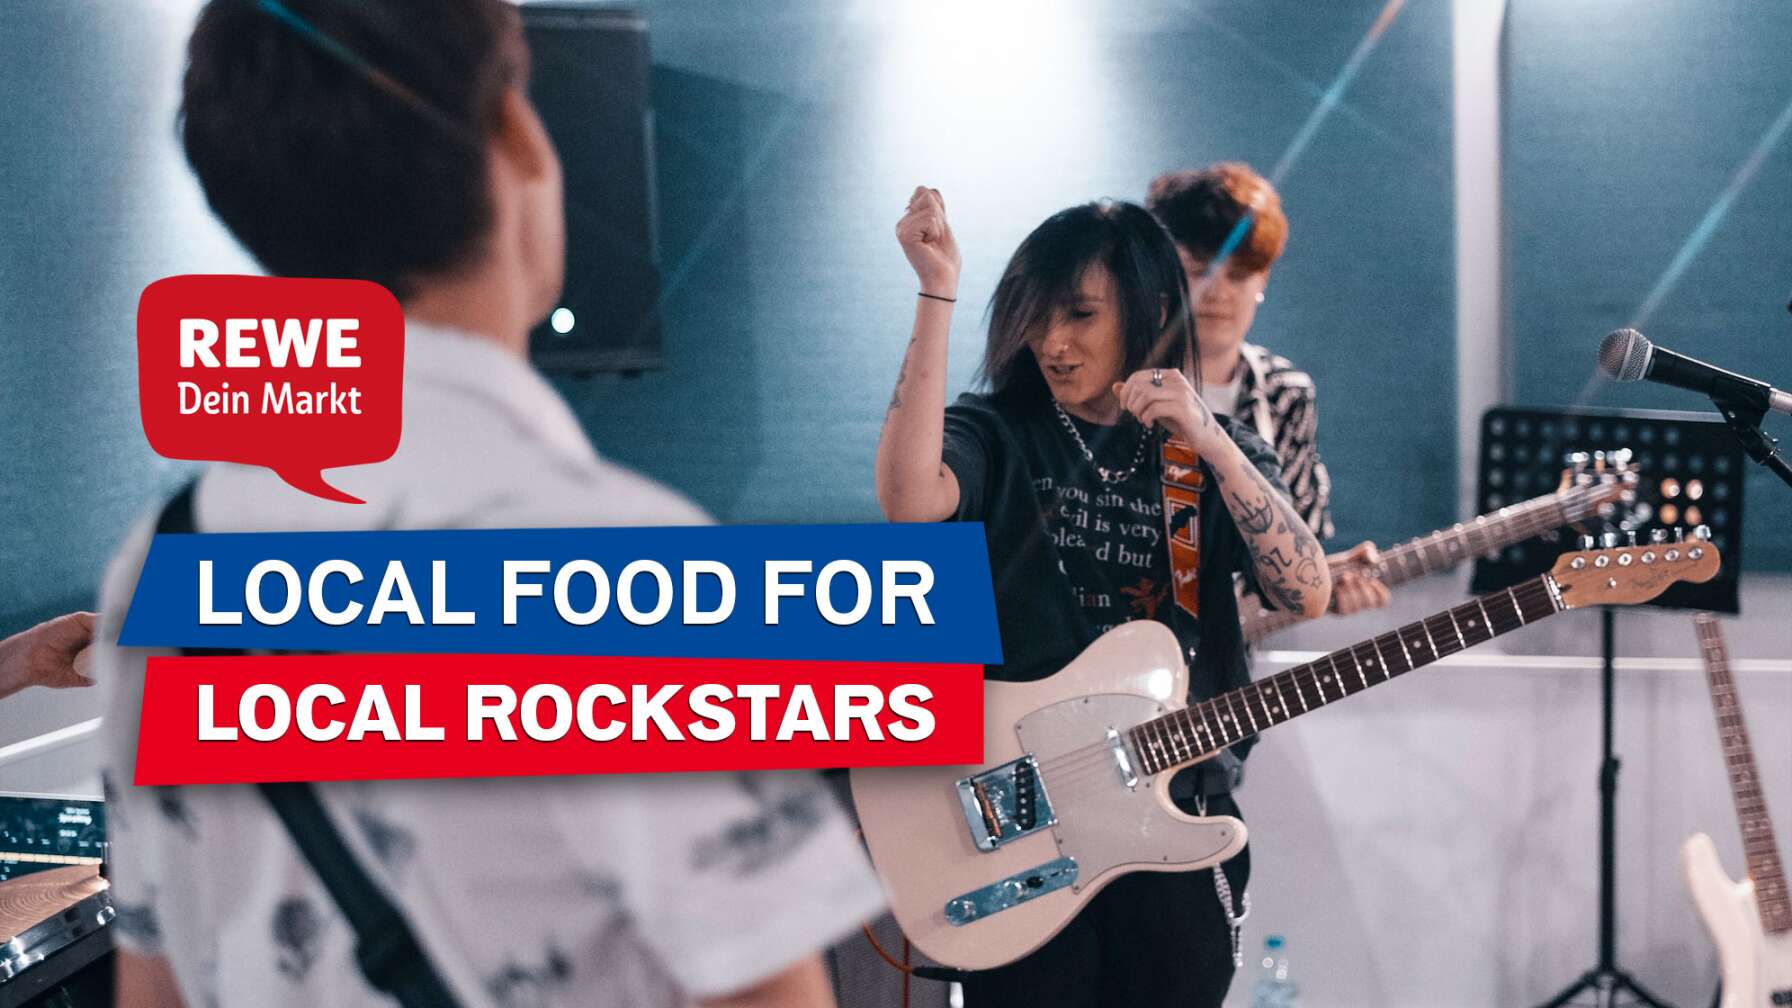 Bild von jungen Leuten bei der Bandprobe, die Spaß haben und lachen - Text: "Local Food for Local Heroes" und das Logo "REWE - dein Markt"